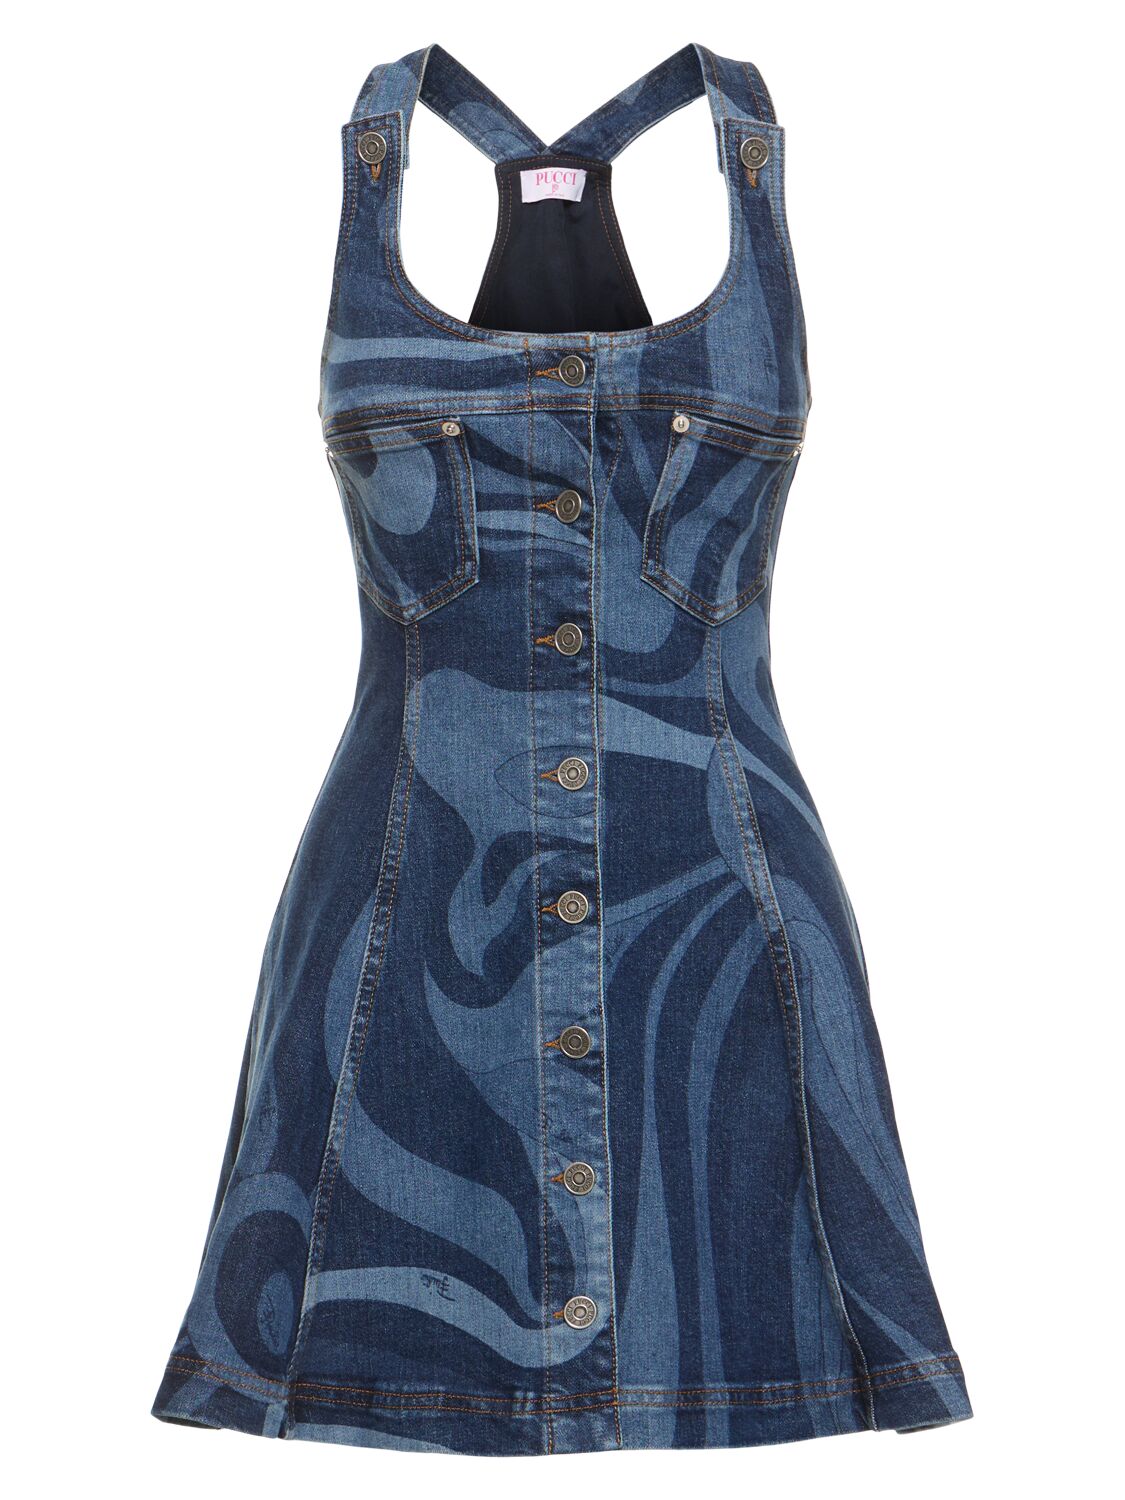 Shop Pucci Printed Denim Mini Dress In Blue,multi